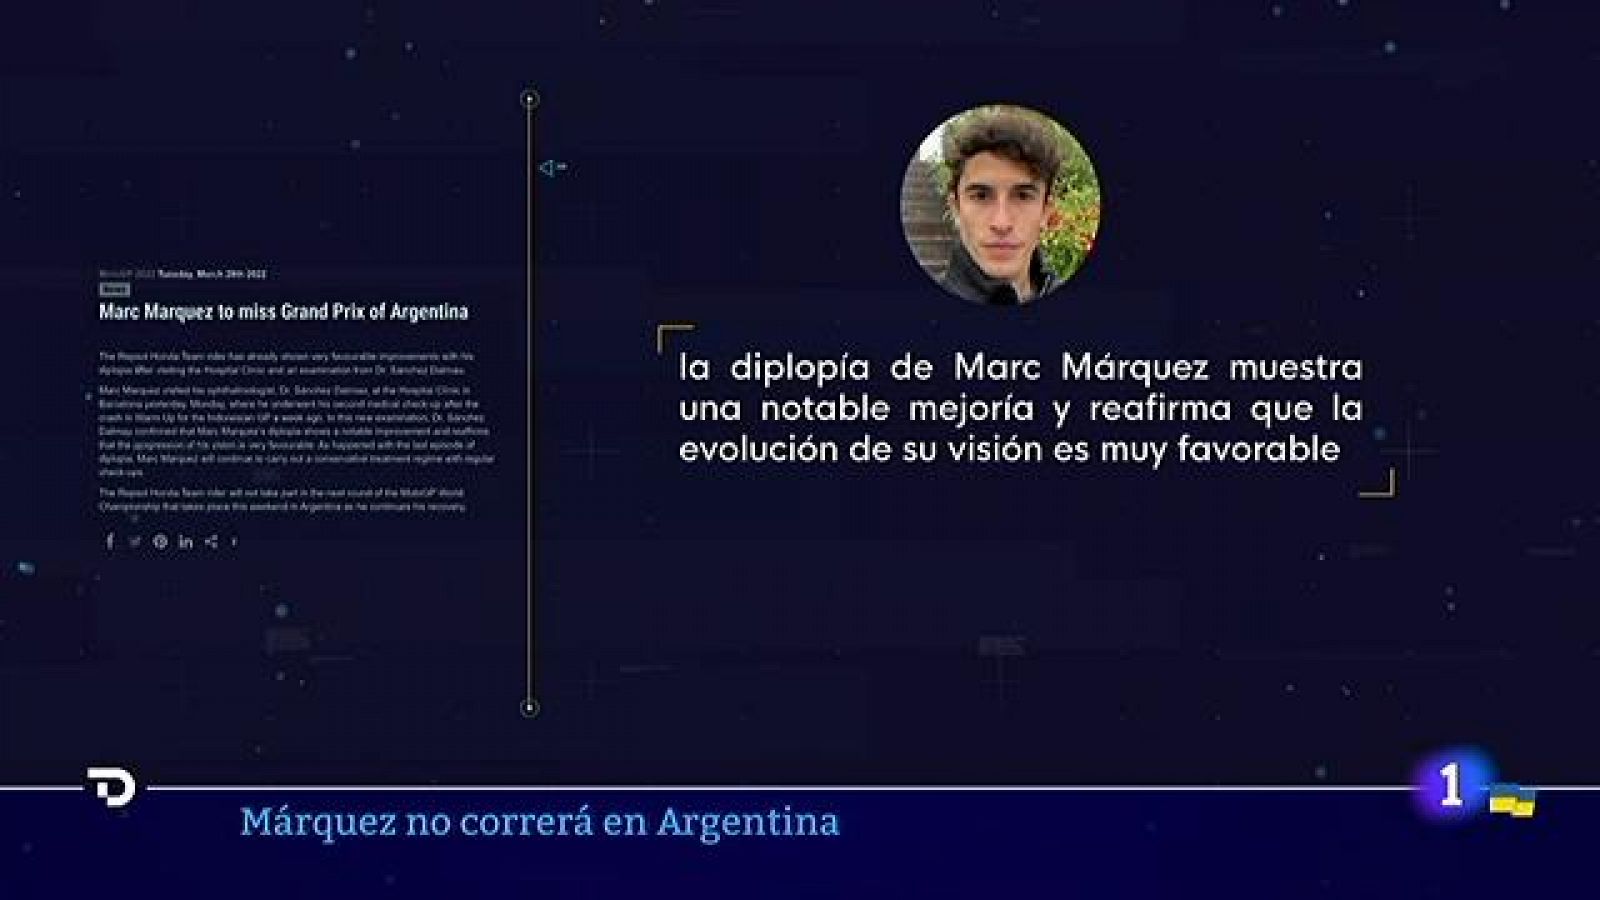 Marc Márquez mejora de su diplopía pero no correrá en Argentina